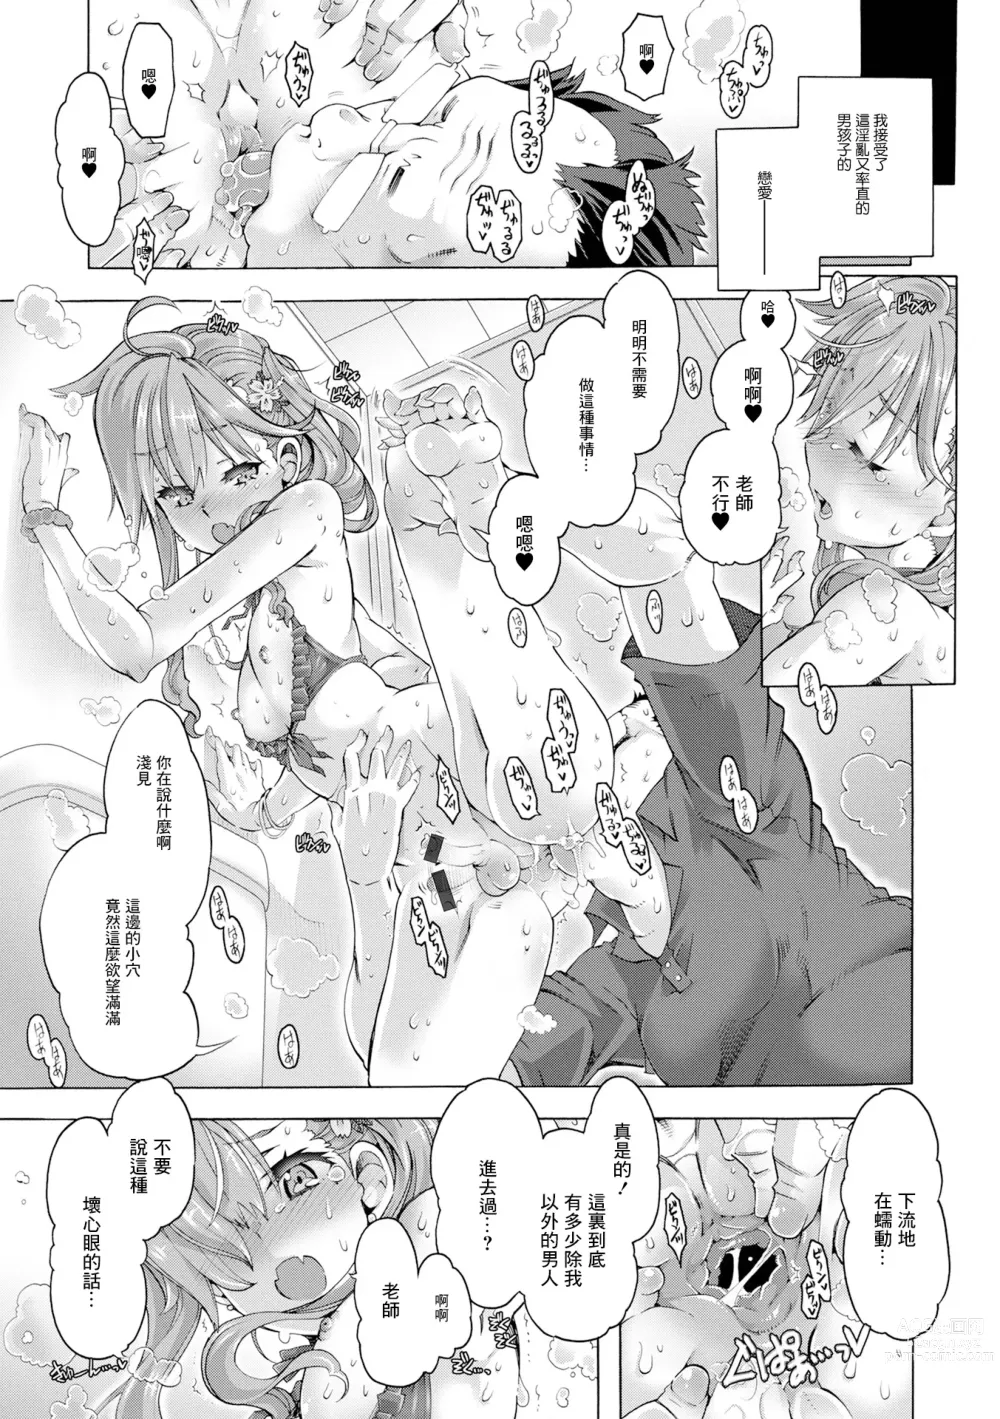 Page 13 of manga Hatsujou Maniacs